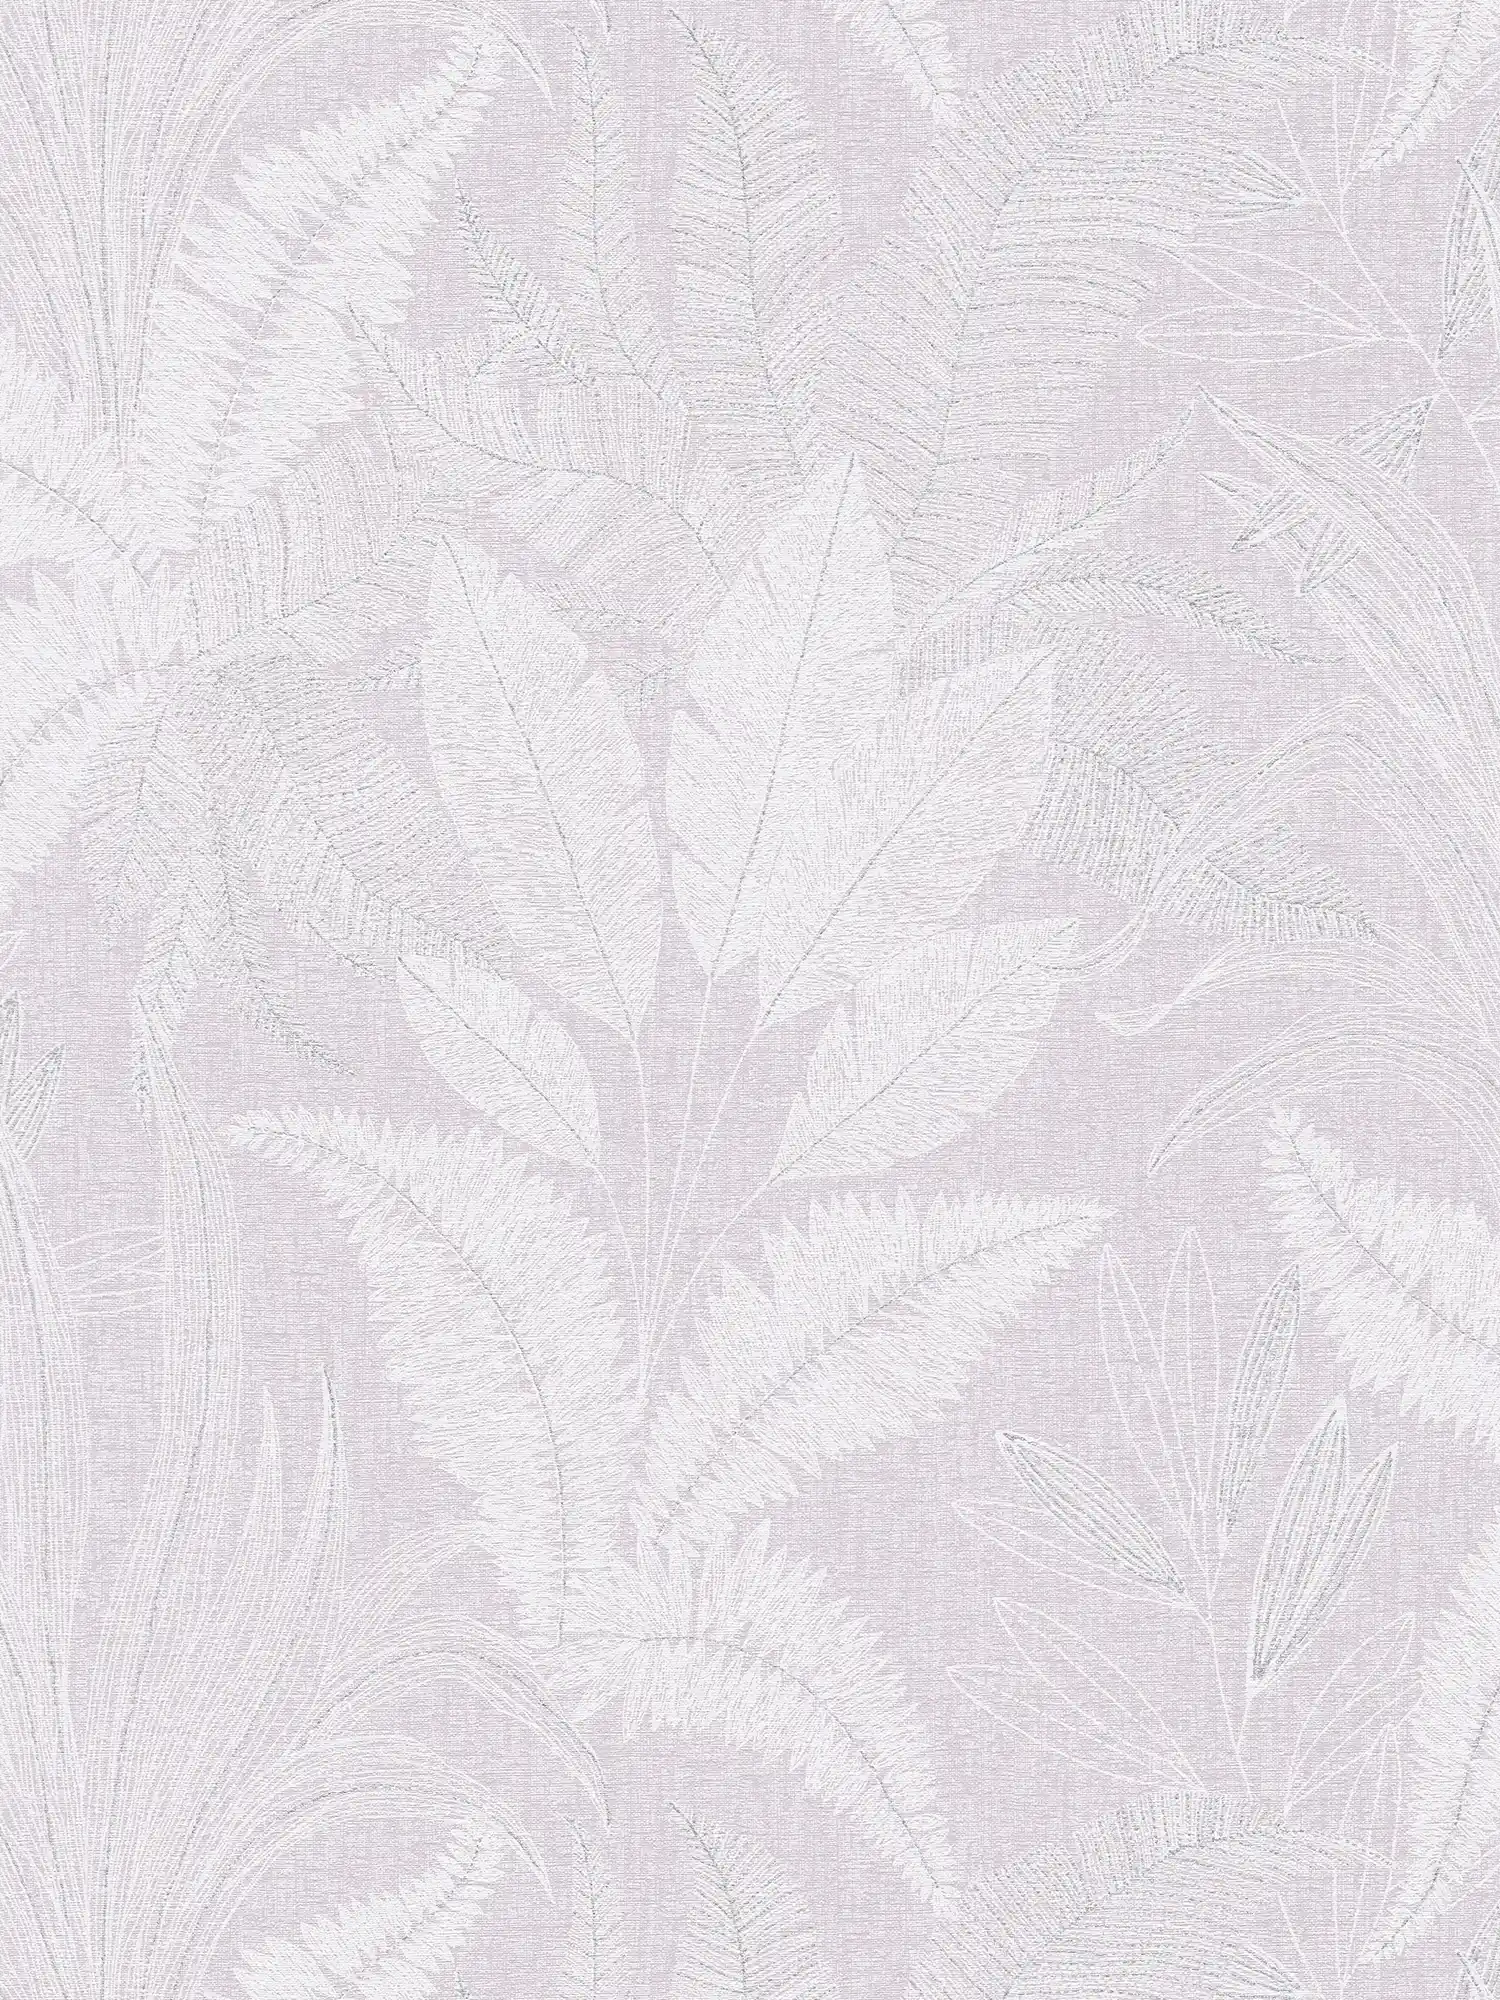 Vliesbehang met groot bladpatroon met lichte structuur - paars, wit, grijs
